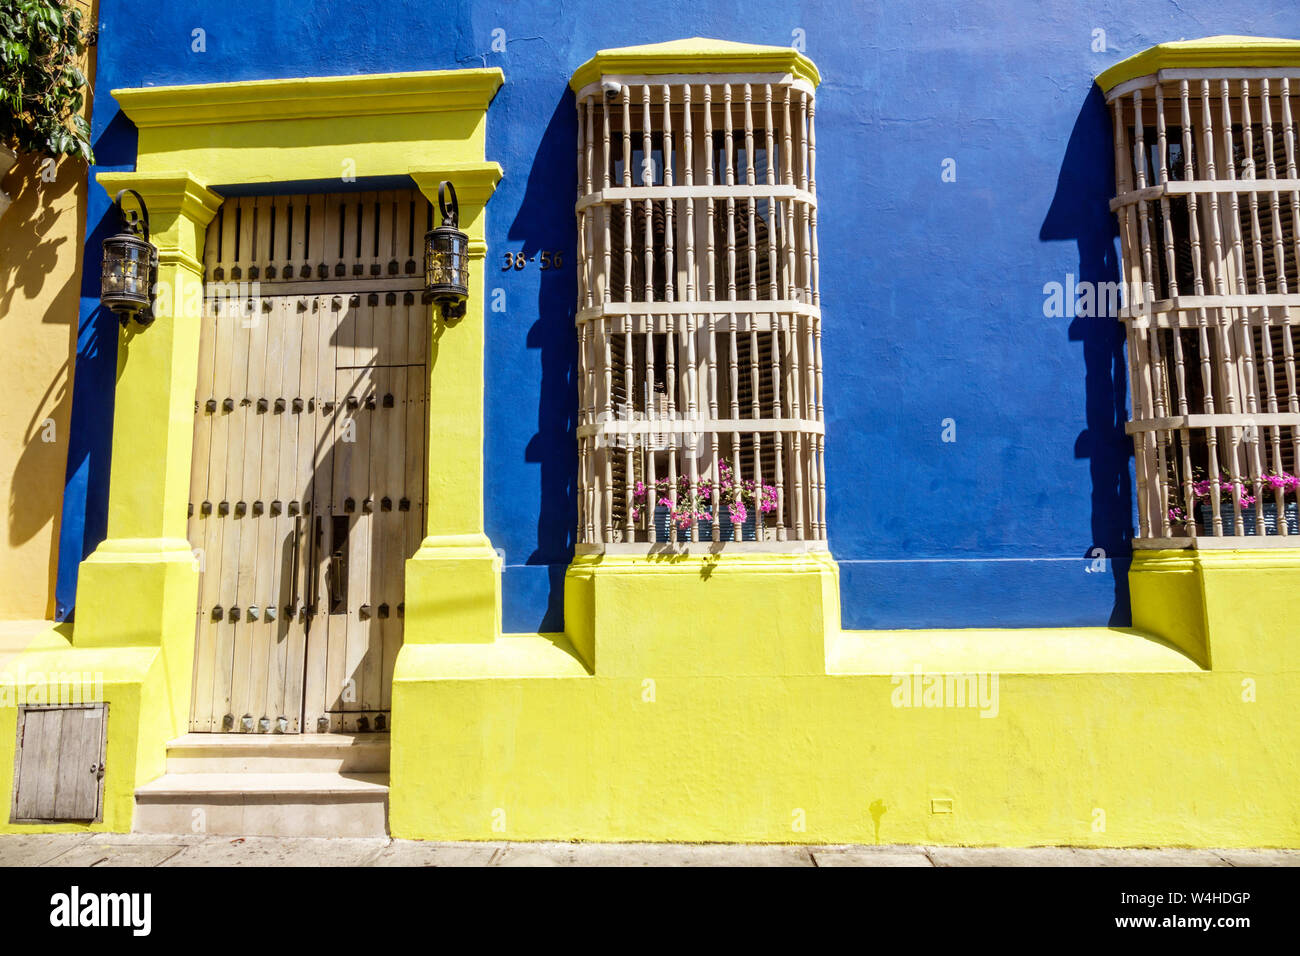 Colombia Cartagena Centro storico fortificato Centro storico restaurato coloniale home architettura facciata colori luminosi giallo blu finestra in legno gr Foto Stock